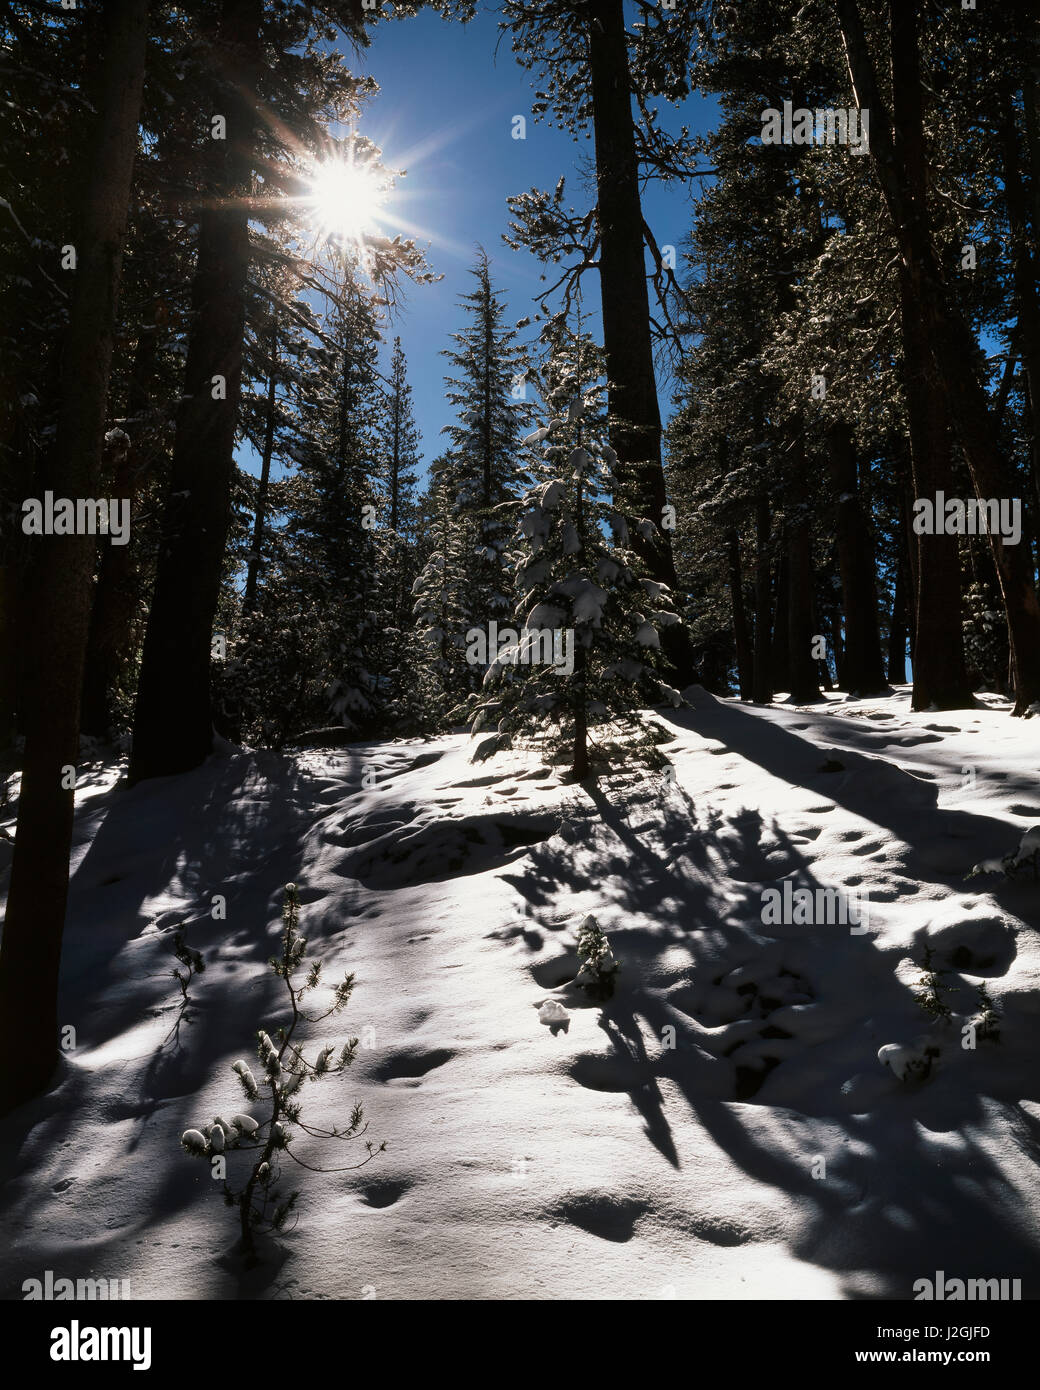 États-unis, Californie, la Sierra Nevada, un rouge couvert de neige Sapin (Abies magnifica) forêt. Tailles disponibles (grand format) Banque D'Images